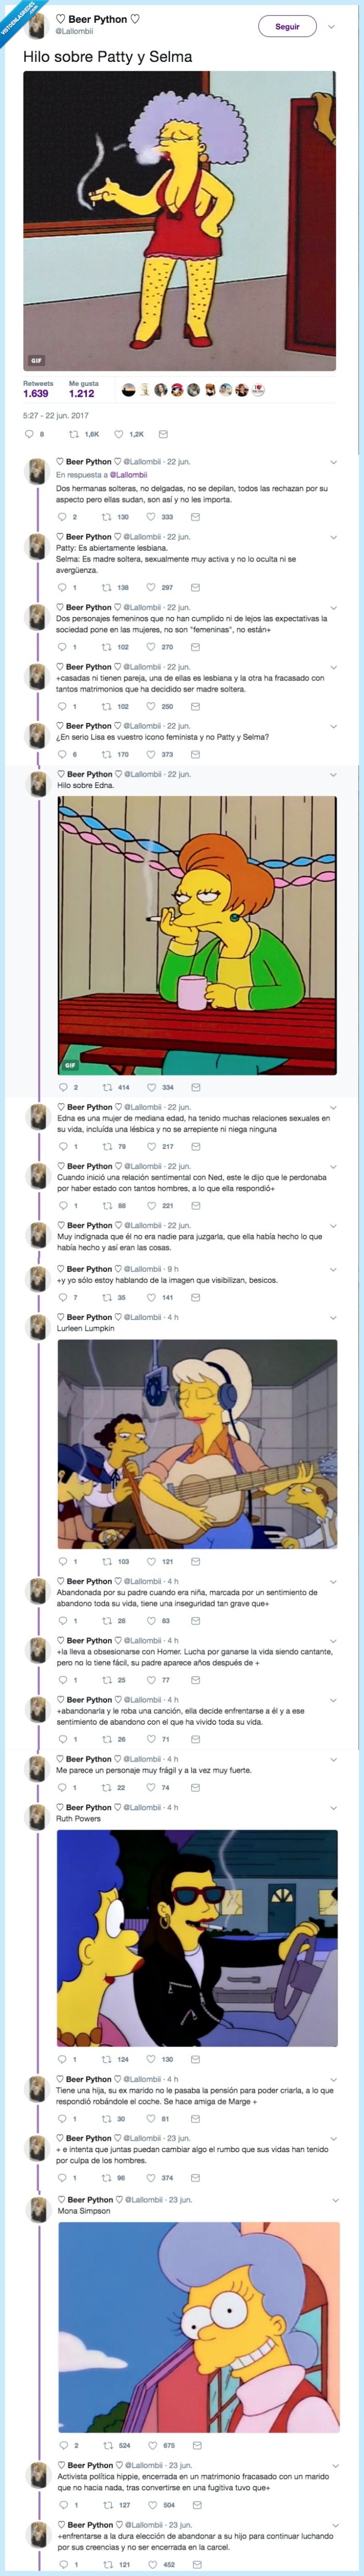 469138 - Cuando no tienes ni idea pero te han metido el feminismo en los Simpsons en vena, por @Lallombii